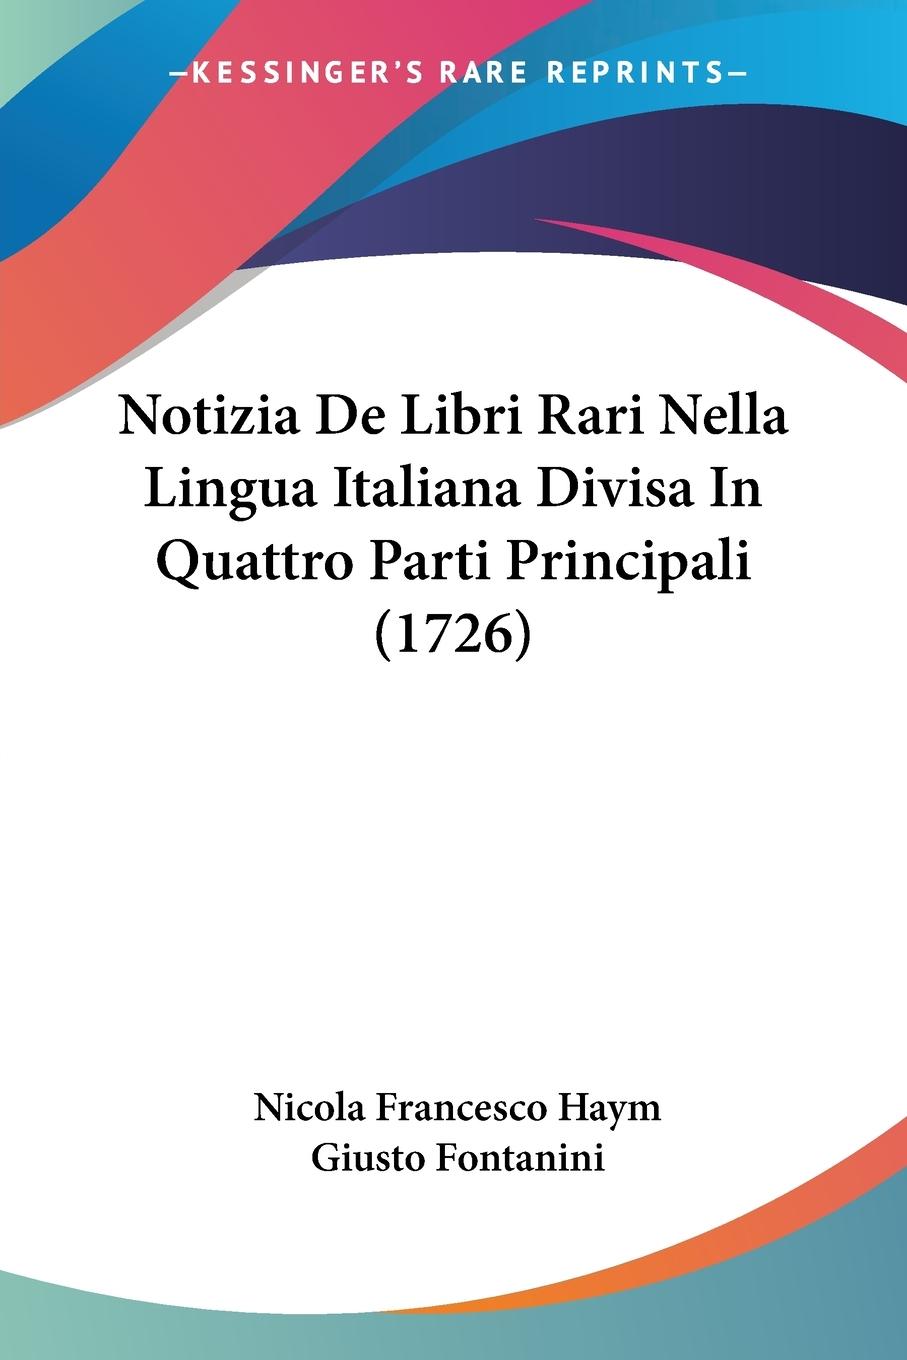 Notizia De Libri Rari Nella Lingua Italiana Divisa In Quattro Parti Principali (1726) - Haym, Nicola Francesco Fontanini, Giusto